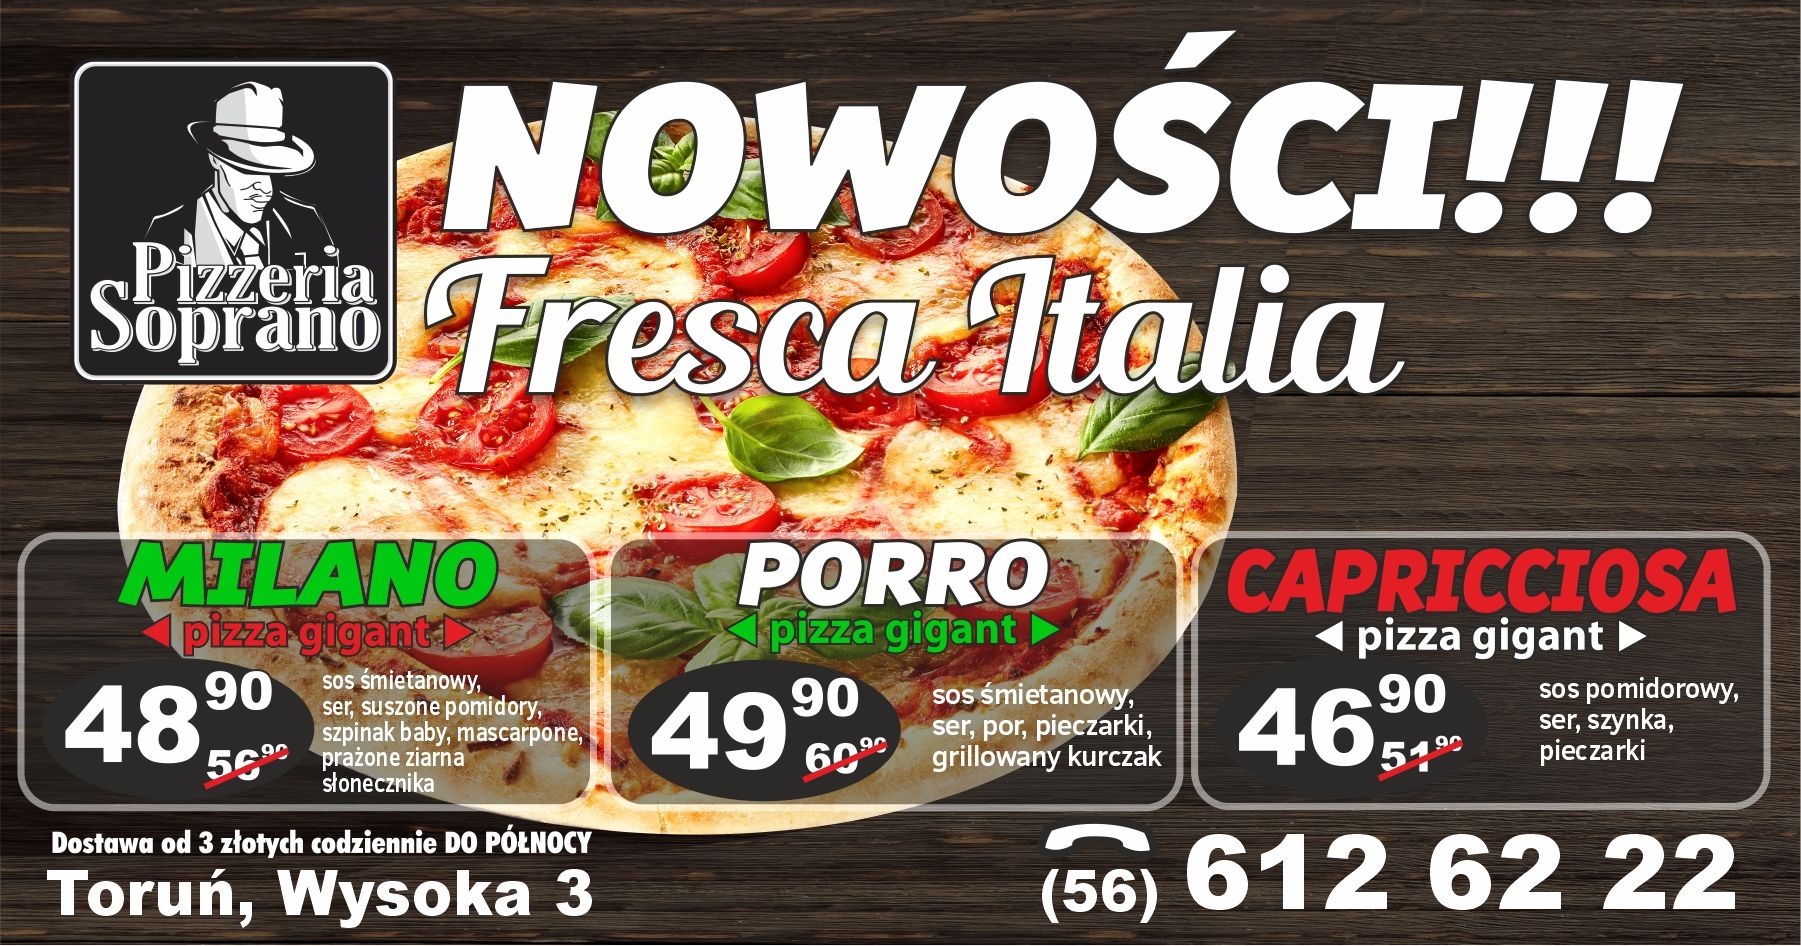 Pizzeria Toruń - Nowości Pizze Fresca Italia